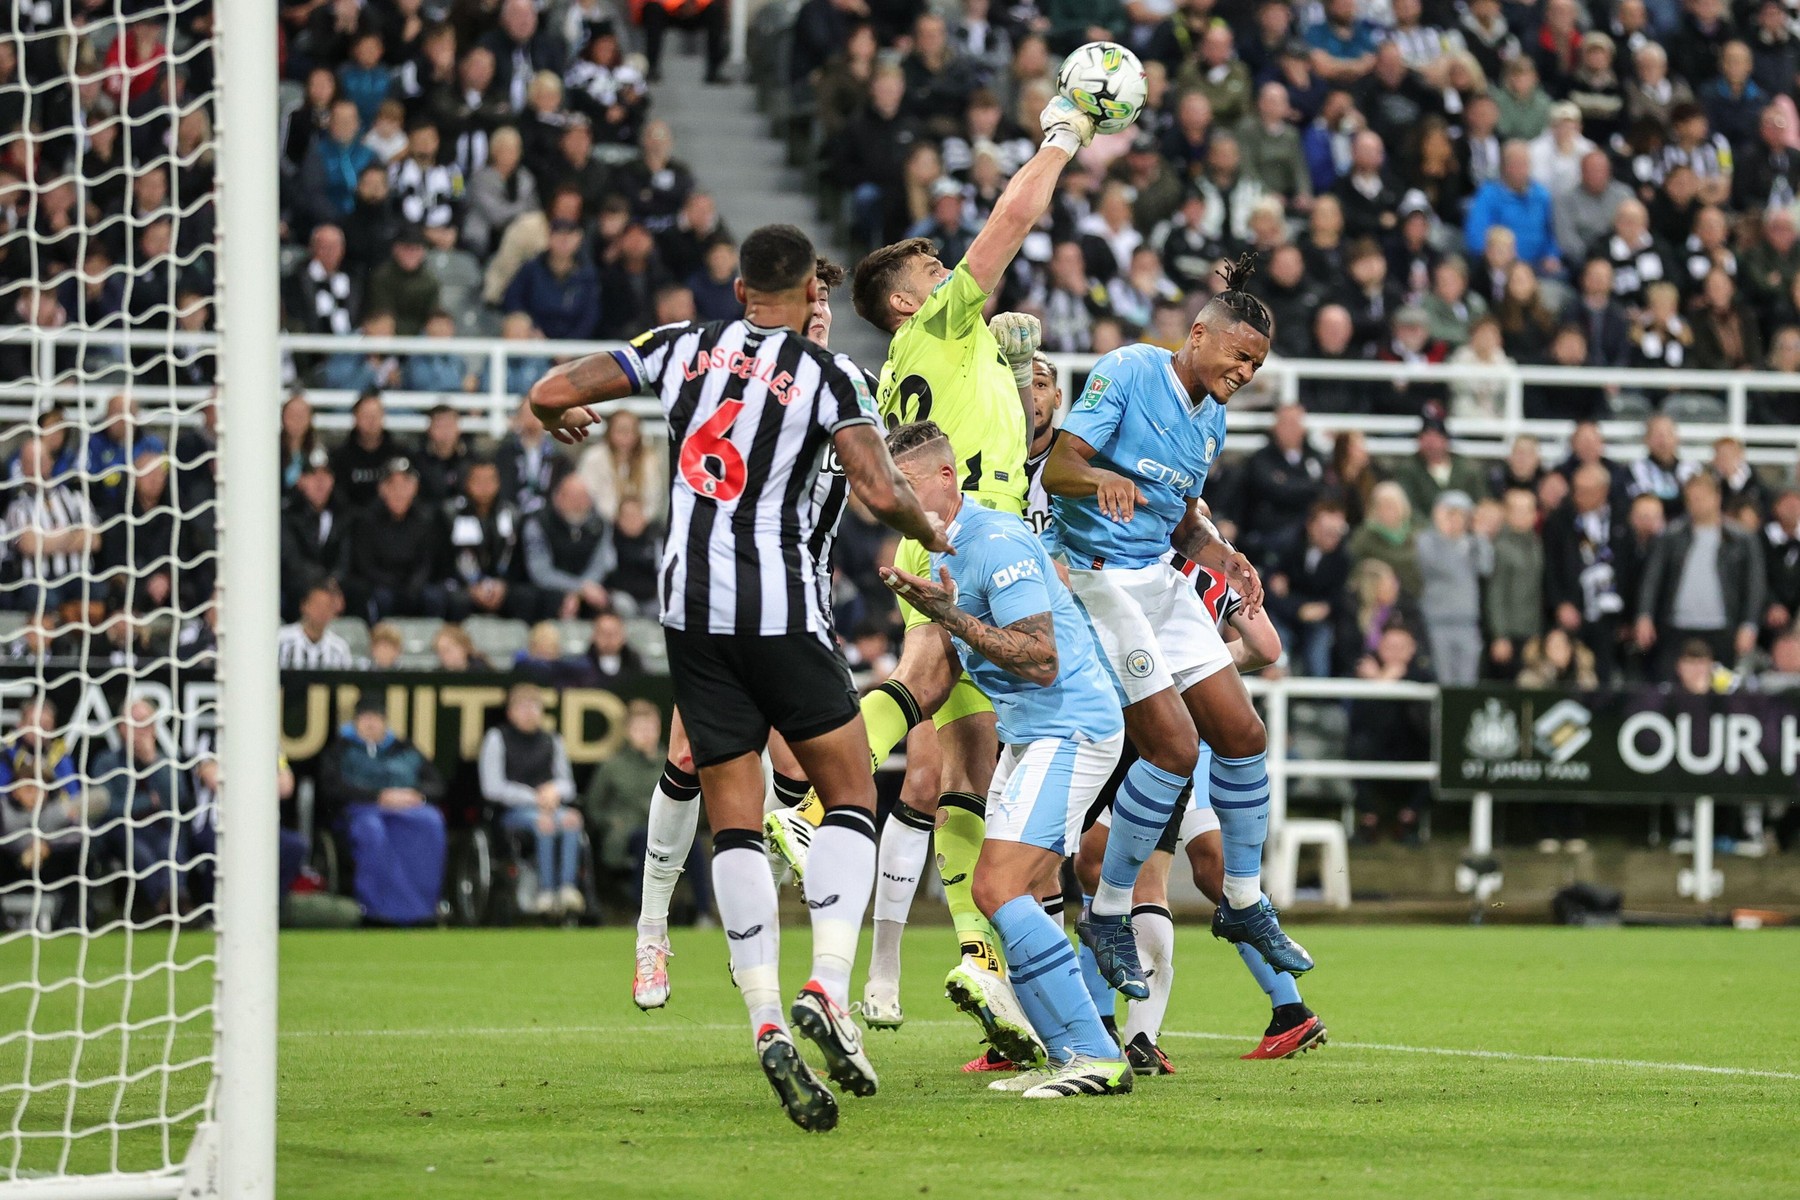 Newcastle - Manchester City 0-1, ACUM DGS 1. Bernardo Silva a deschis scorul pentru ”Cetățeni”